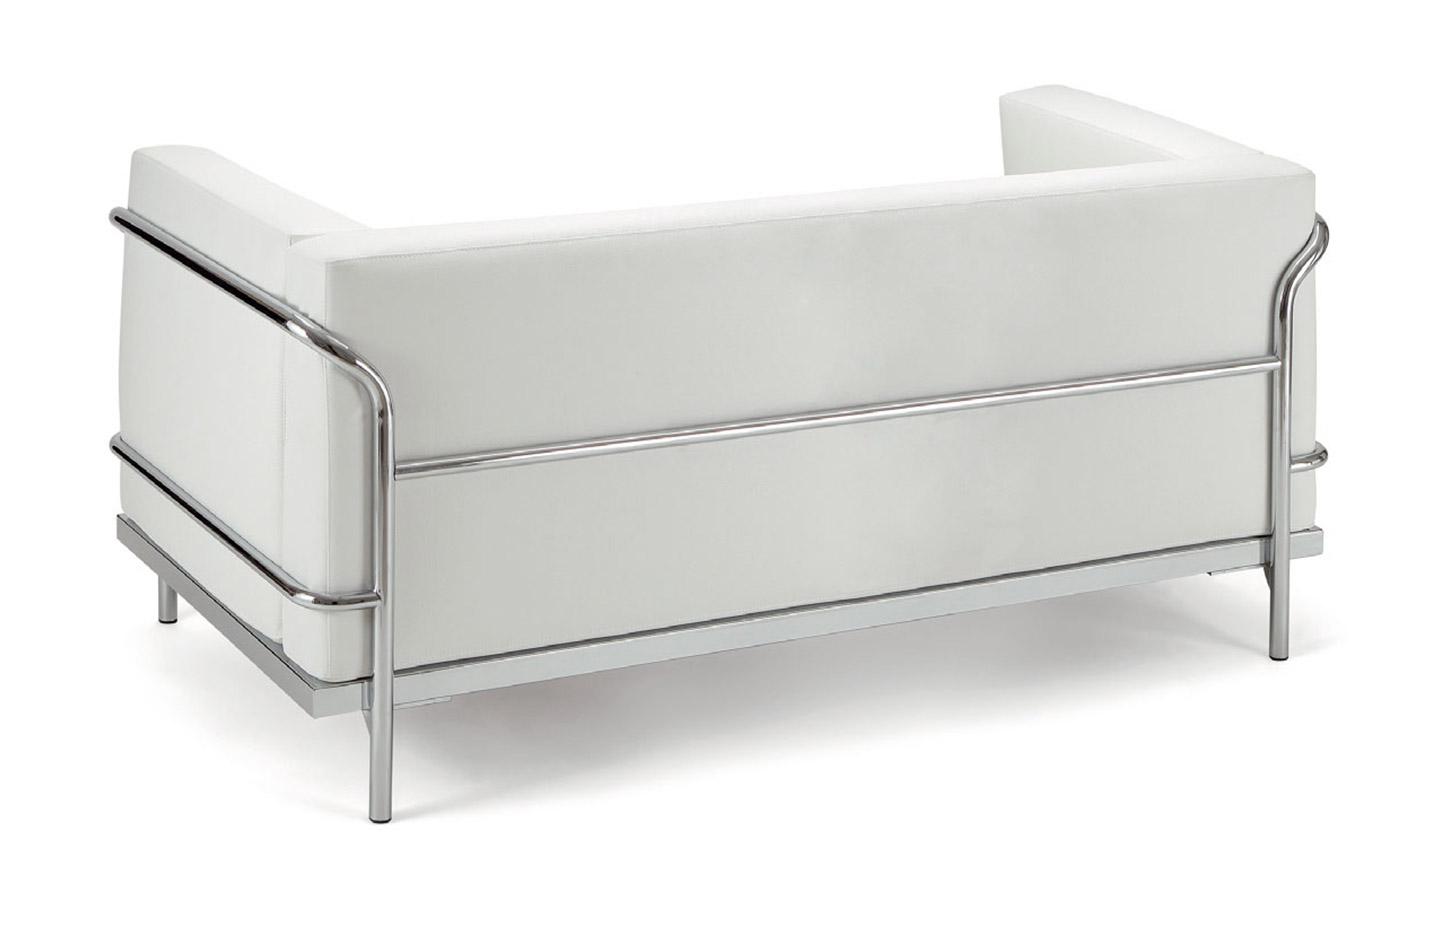 Design inspiré du canapé Le Corbusier LC2, Fabrication Française, gamme Corobin fauteuil, France Bureau